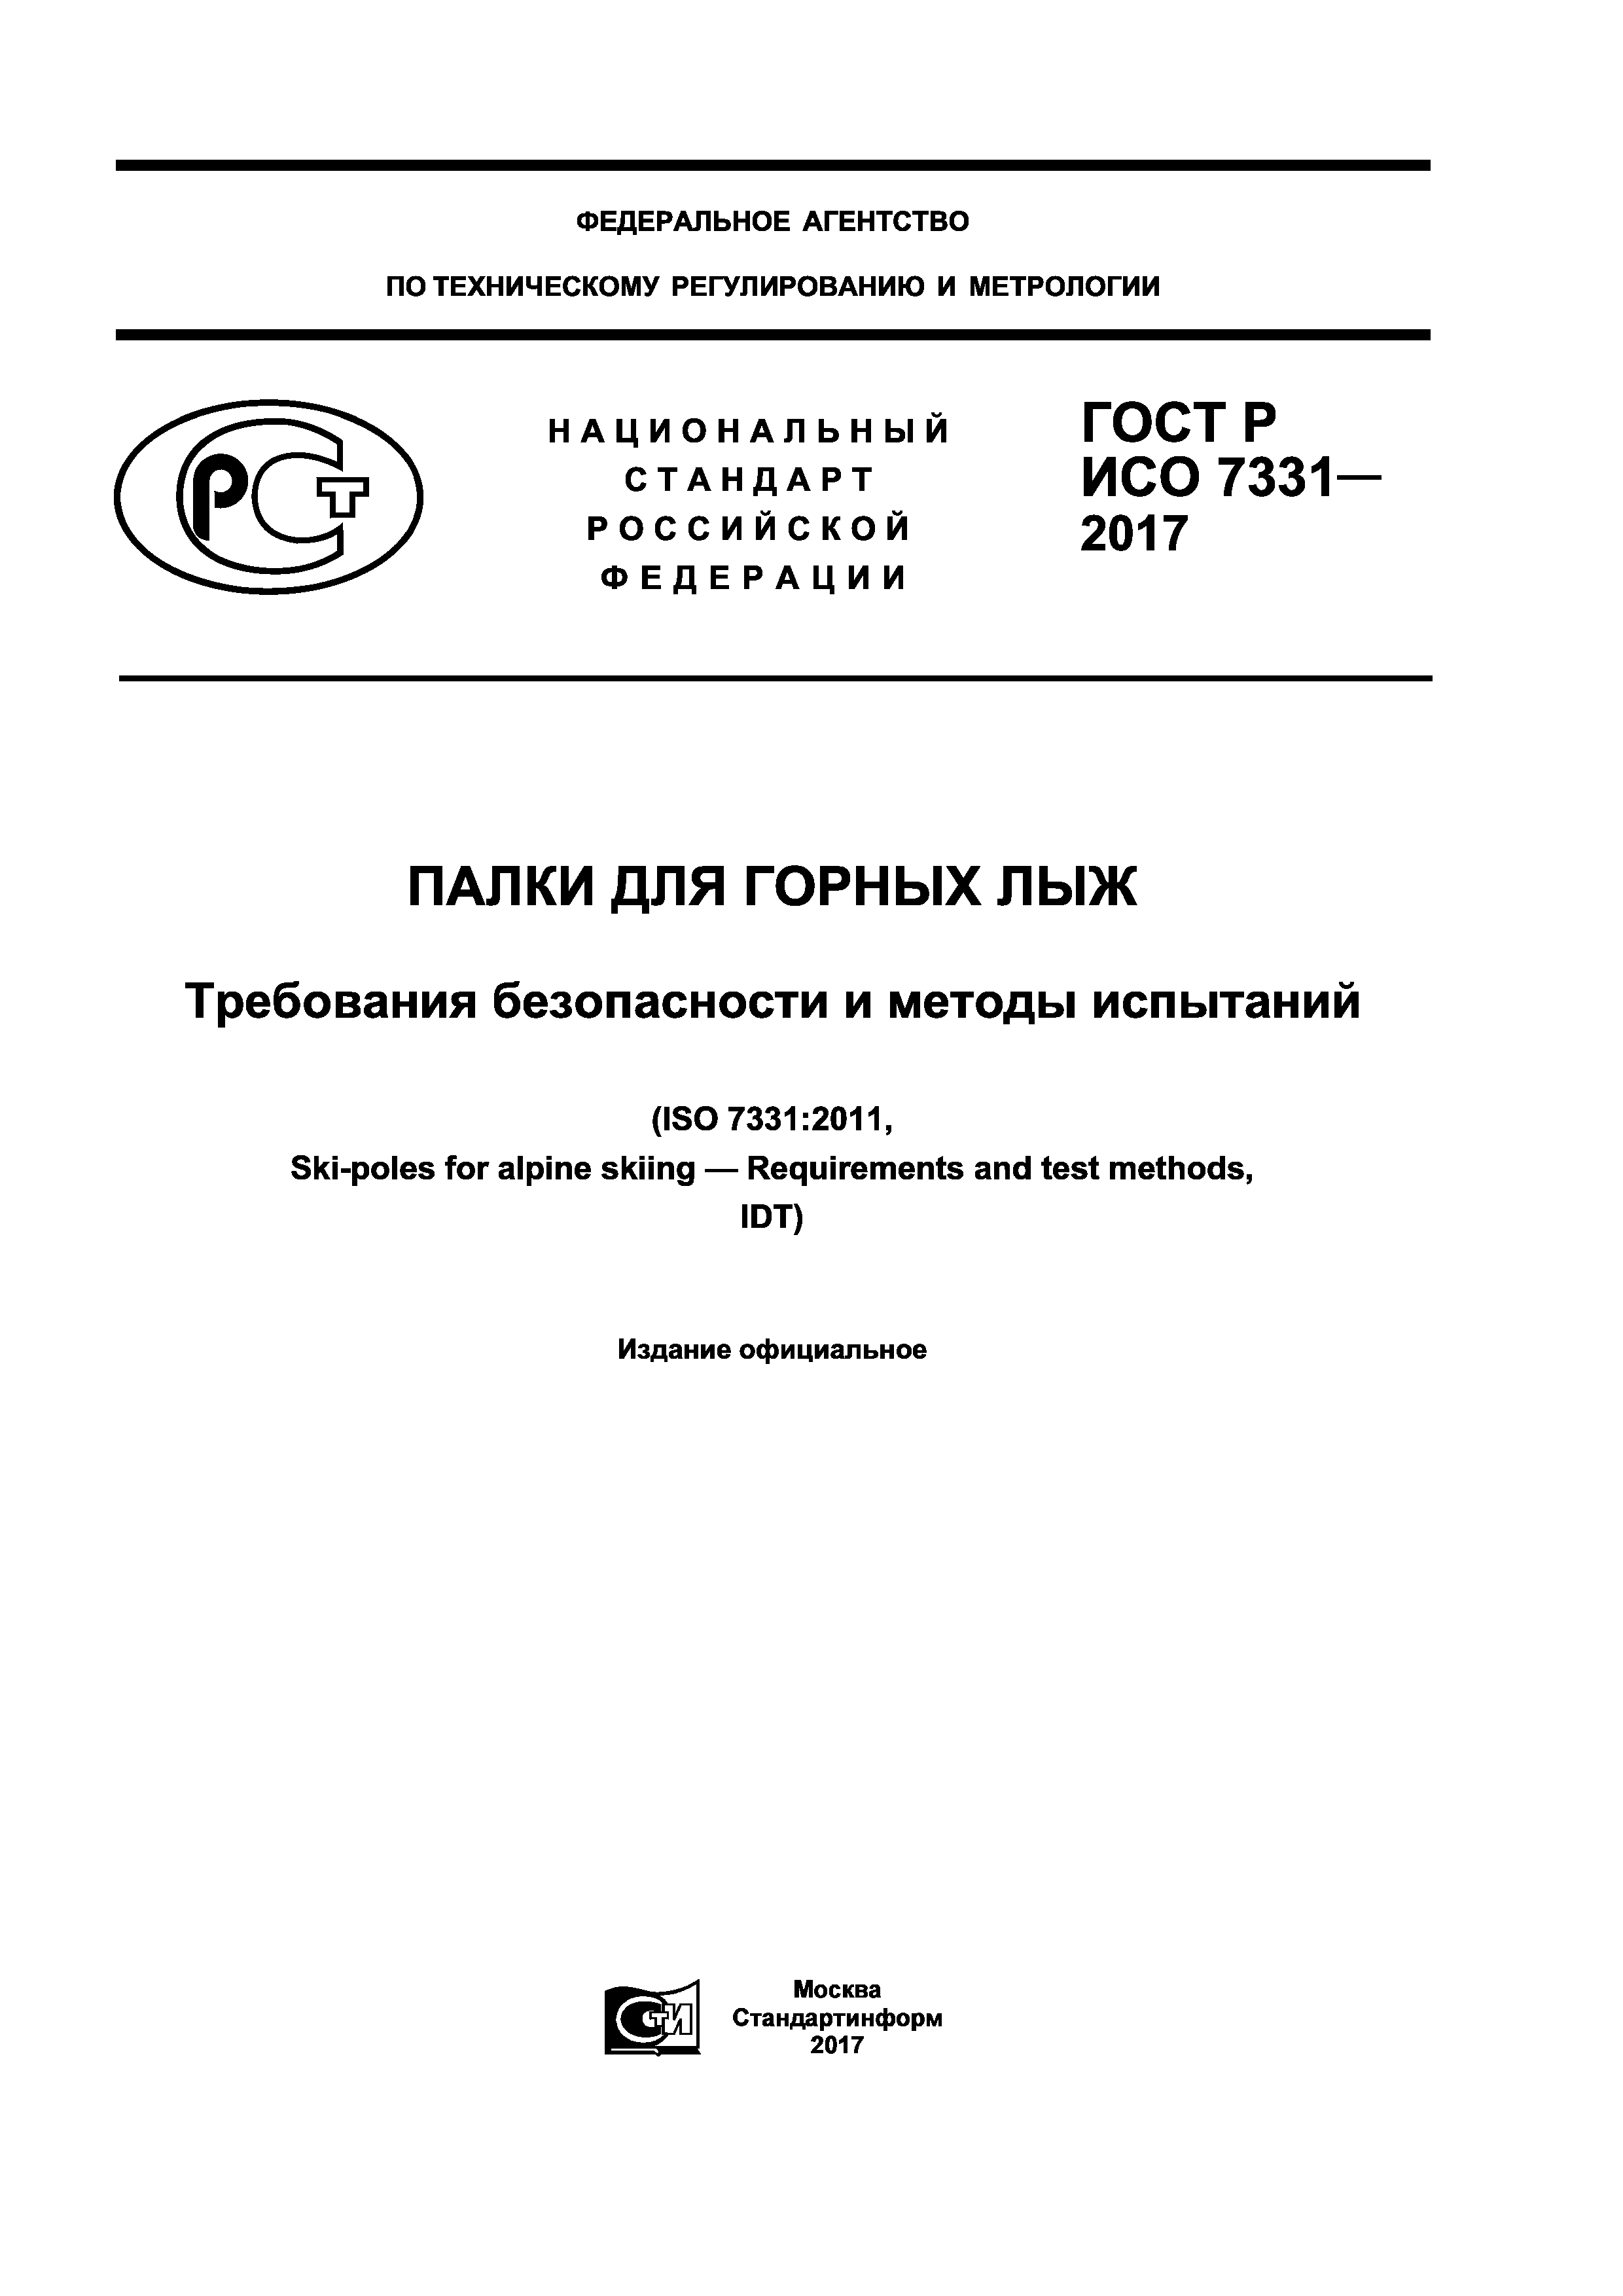 ГОСТ Р ИСО 7331-2017